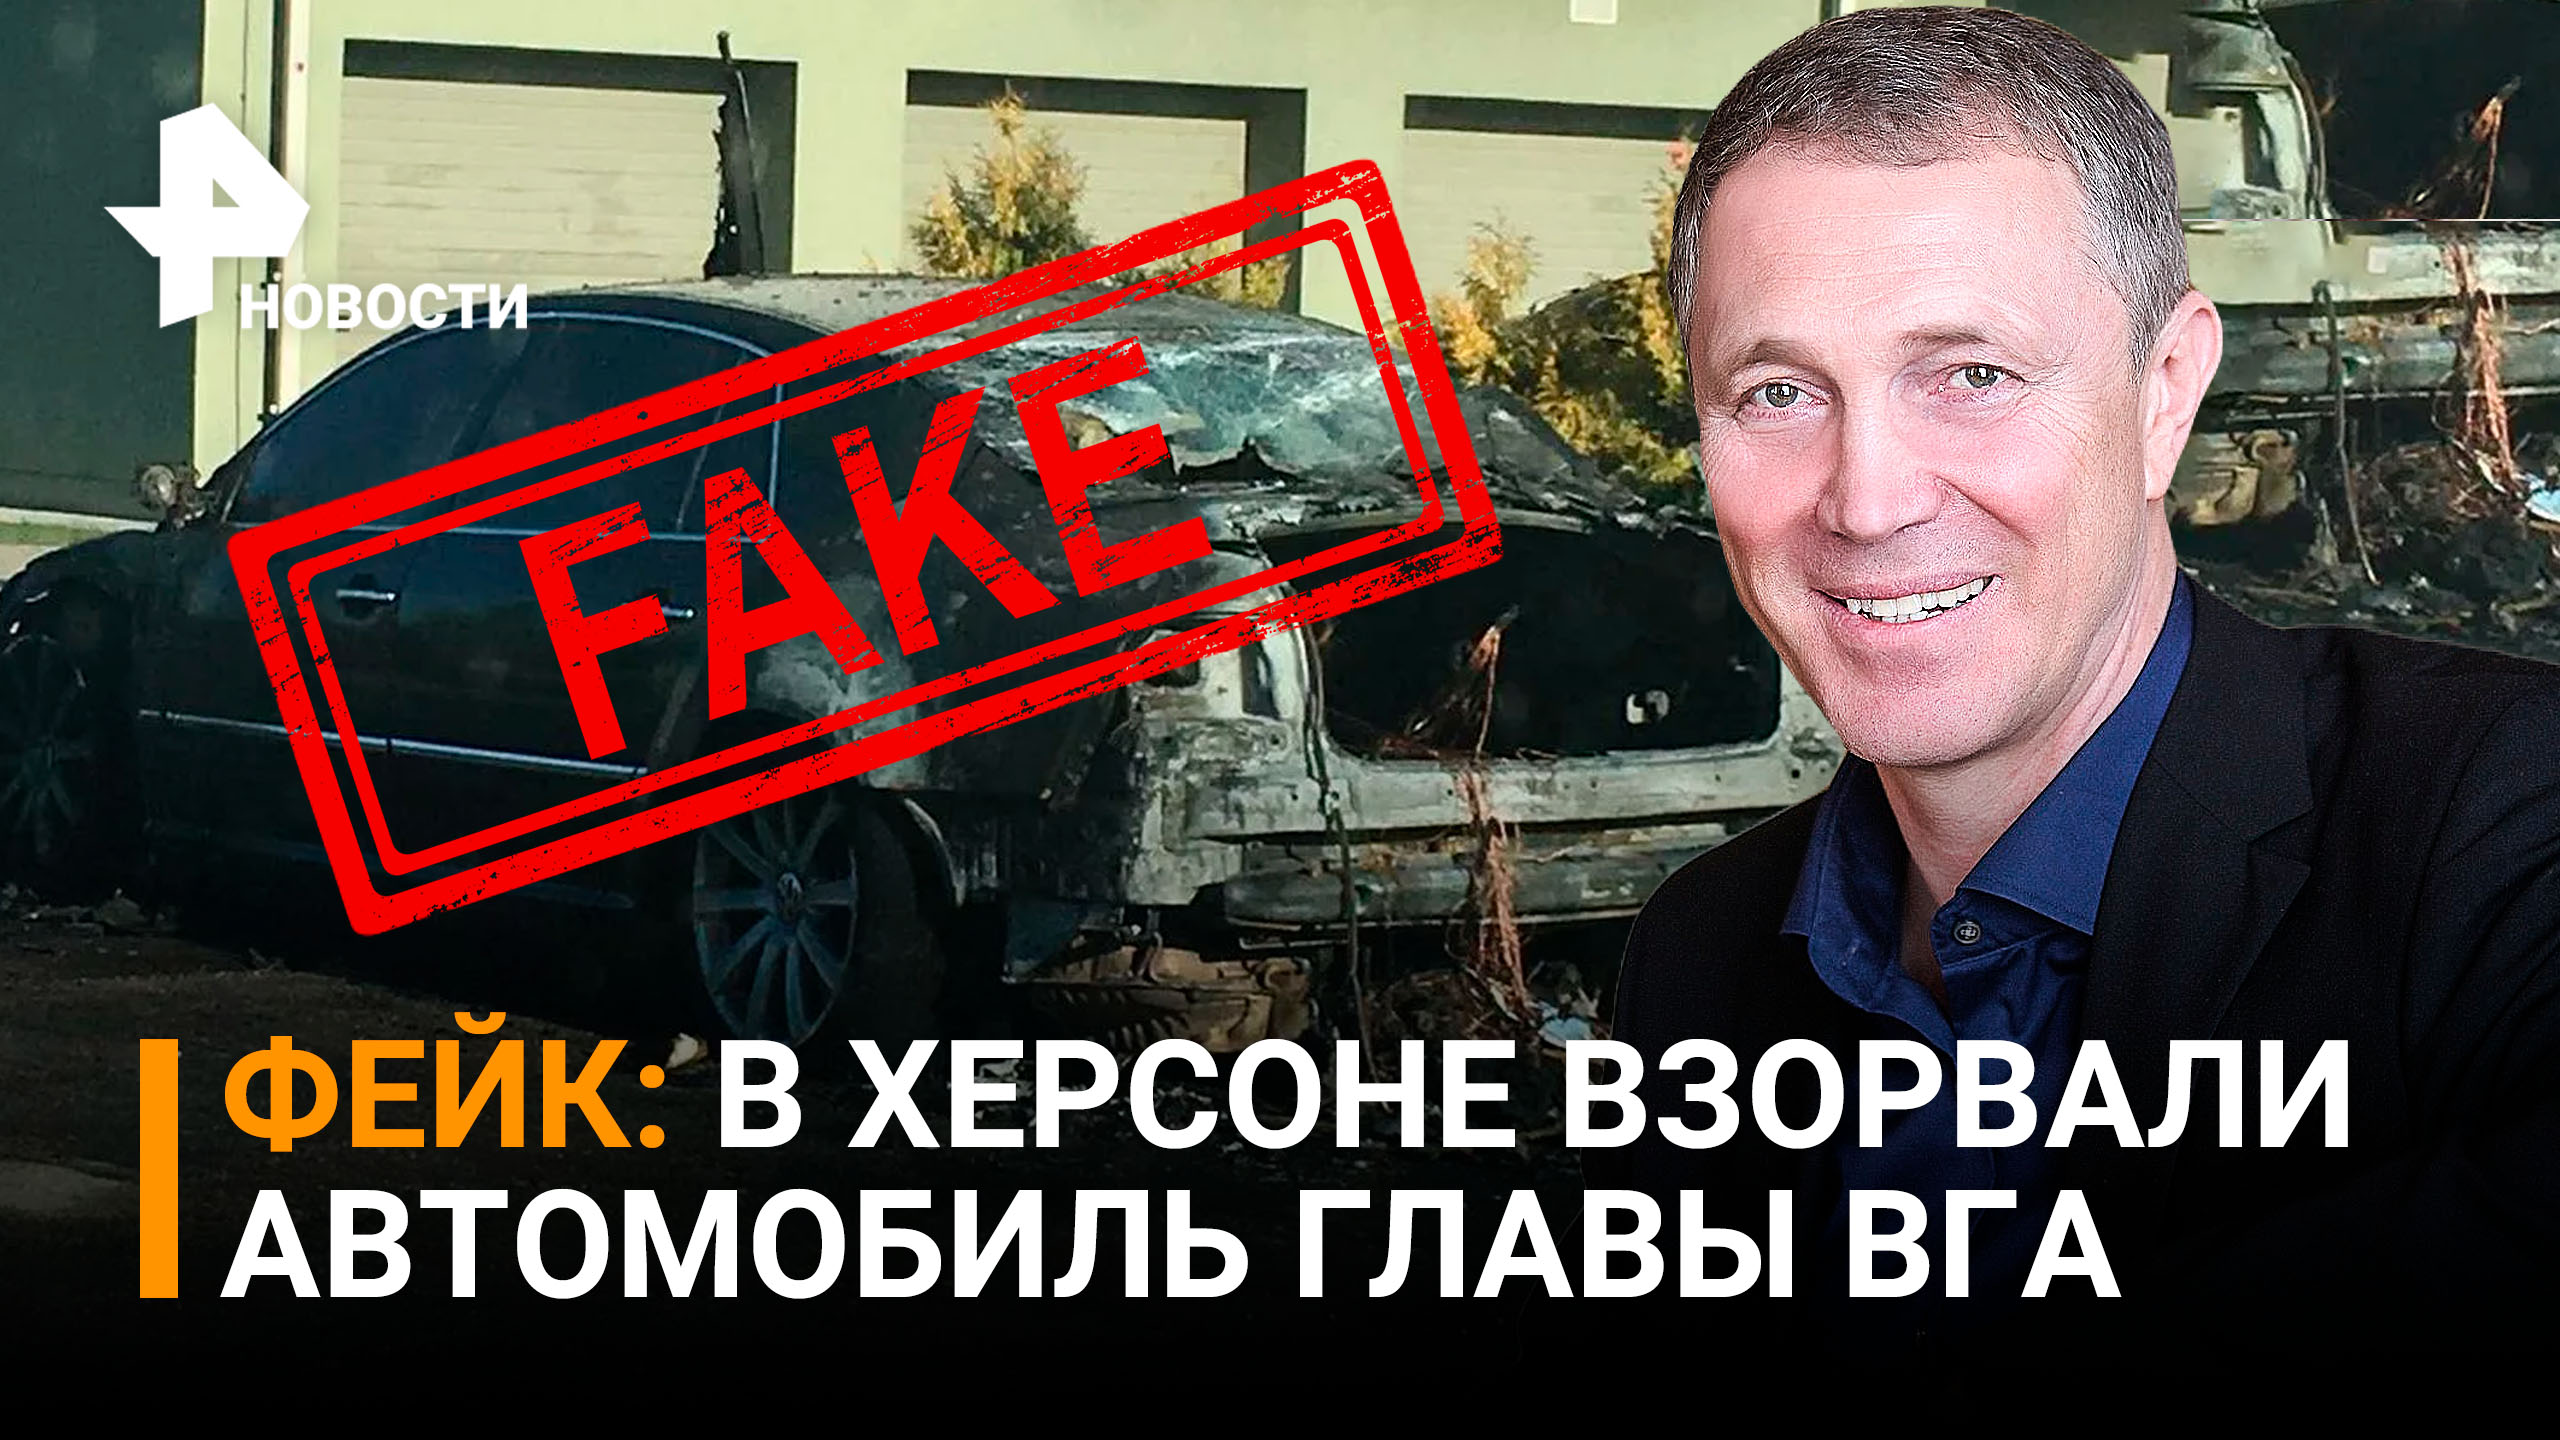 Сальдо опроверг информацию о взрыве его служебного автомобиля / РЕН Новости